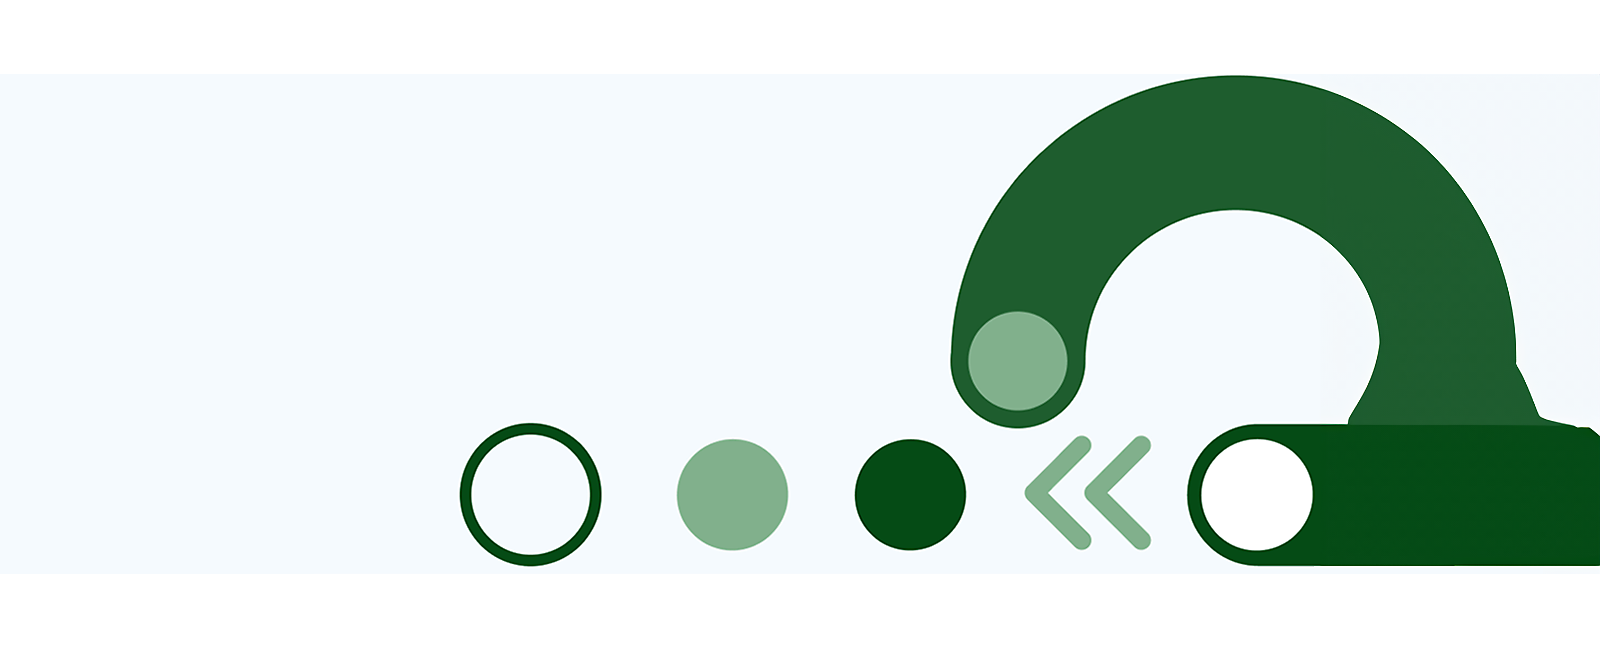 흰색 배경의 추상적인 녹색 도형과 선.